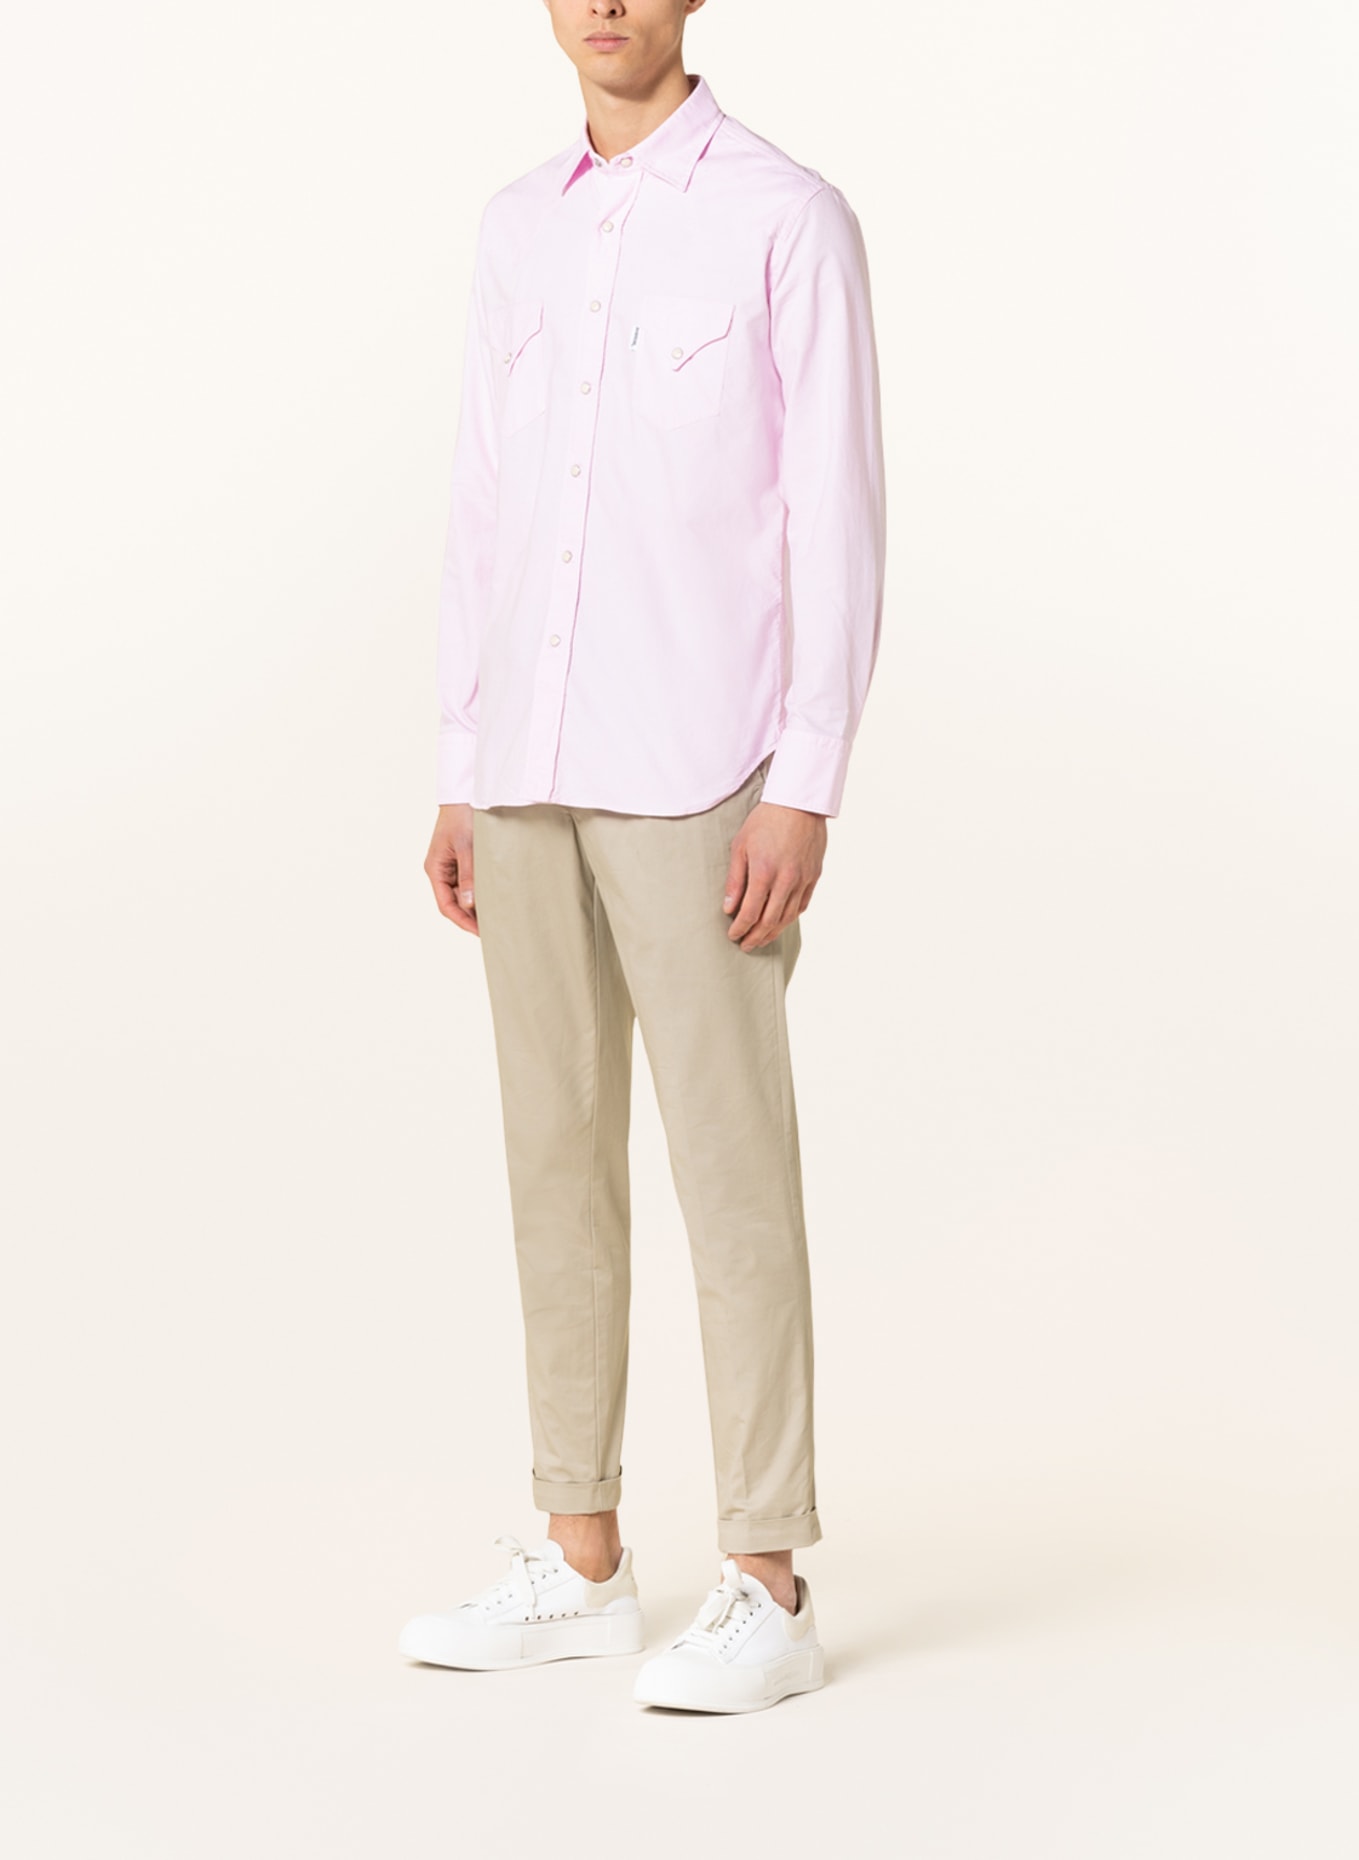 DOPPIAA Shirt AARIOSTO slim fit, Color: PINK (Image 2)